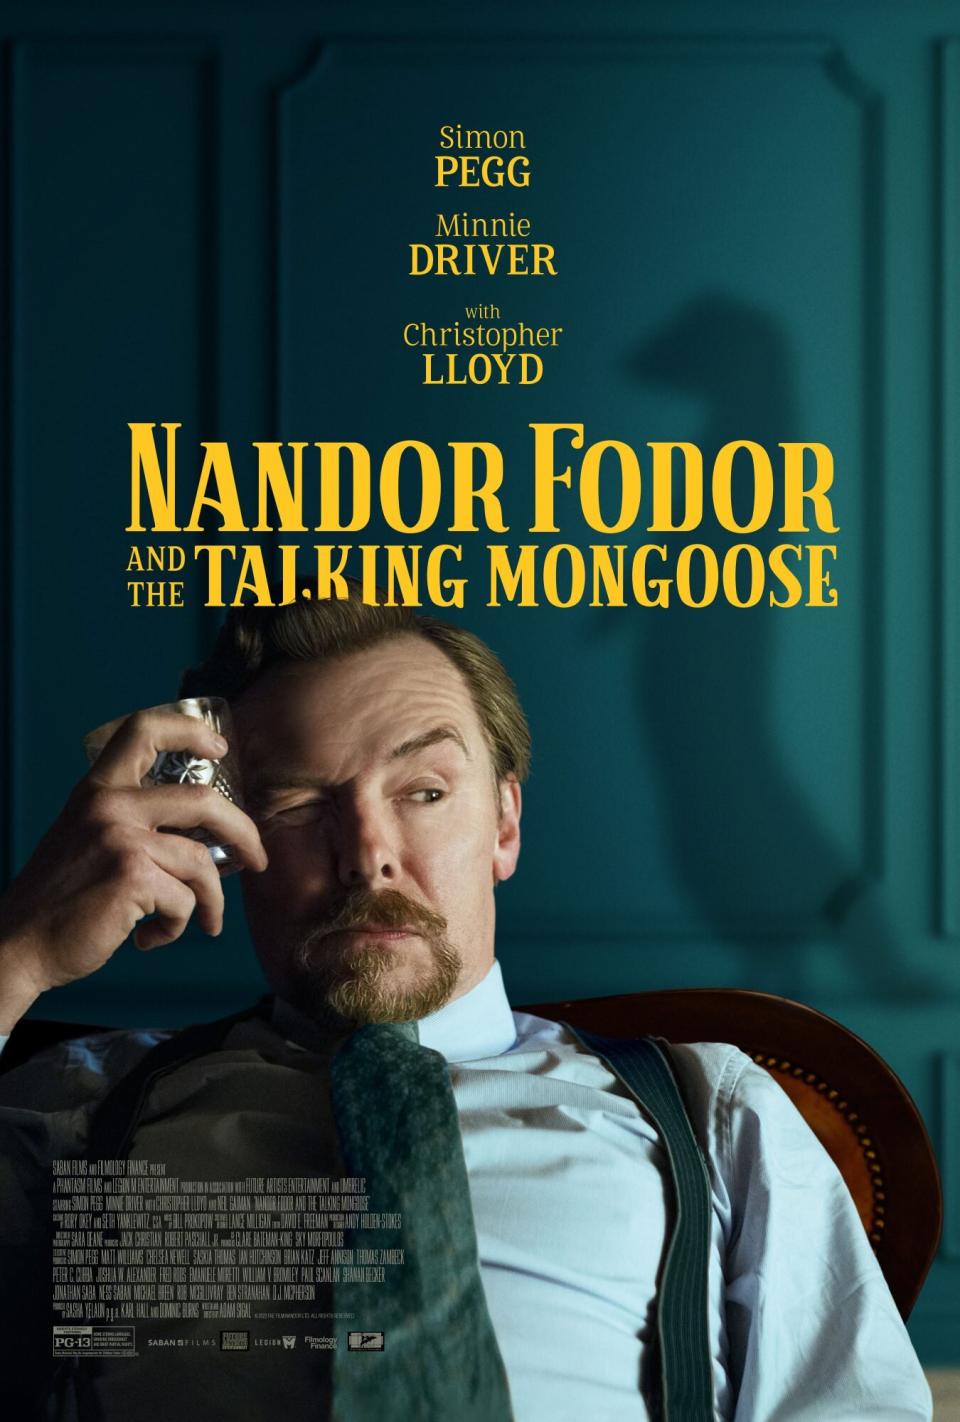 Simon Pegg investigates a Neil Gaimanvoiced mongoose in Nandor Fodor